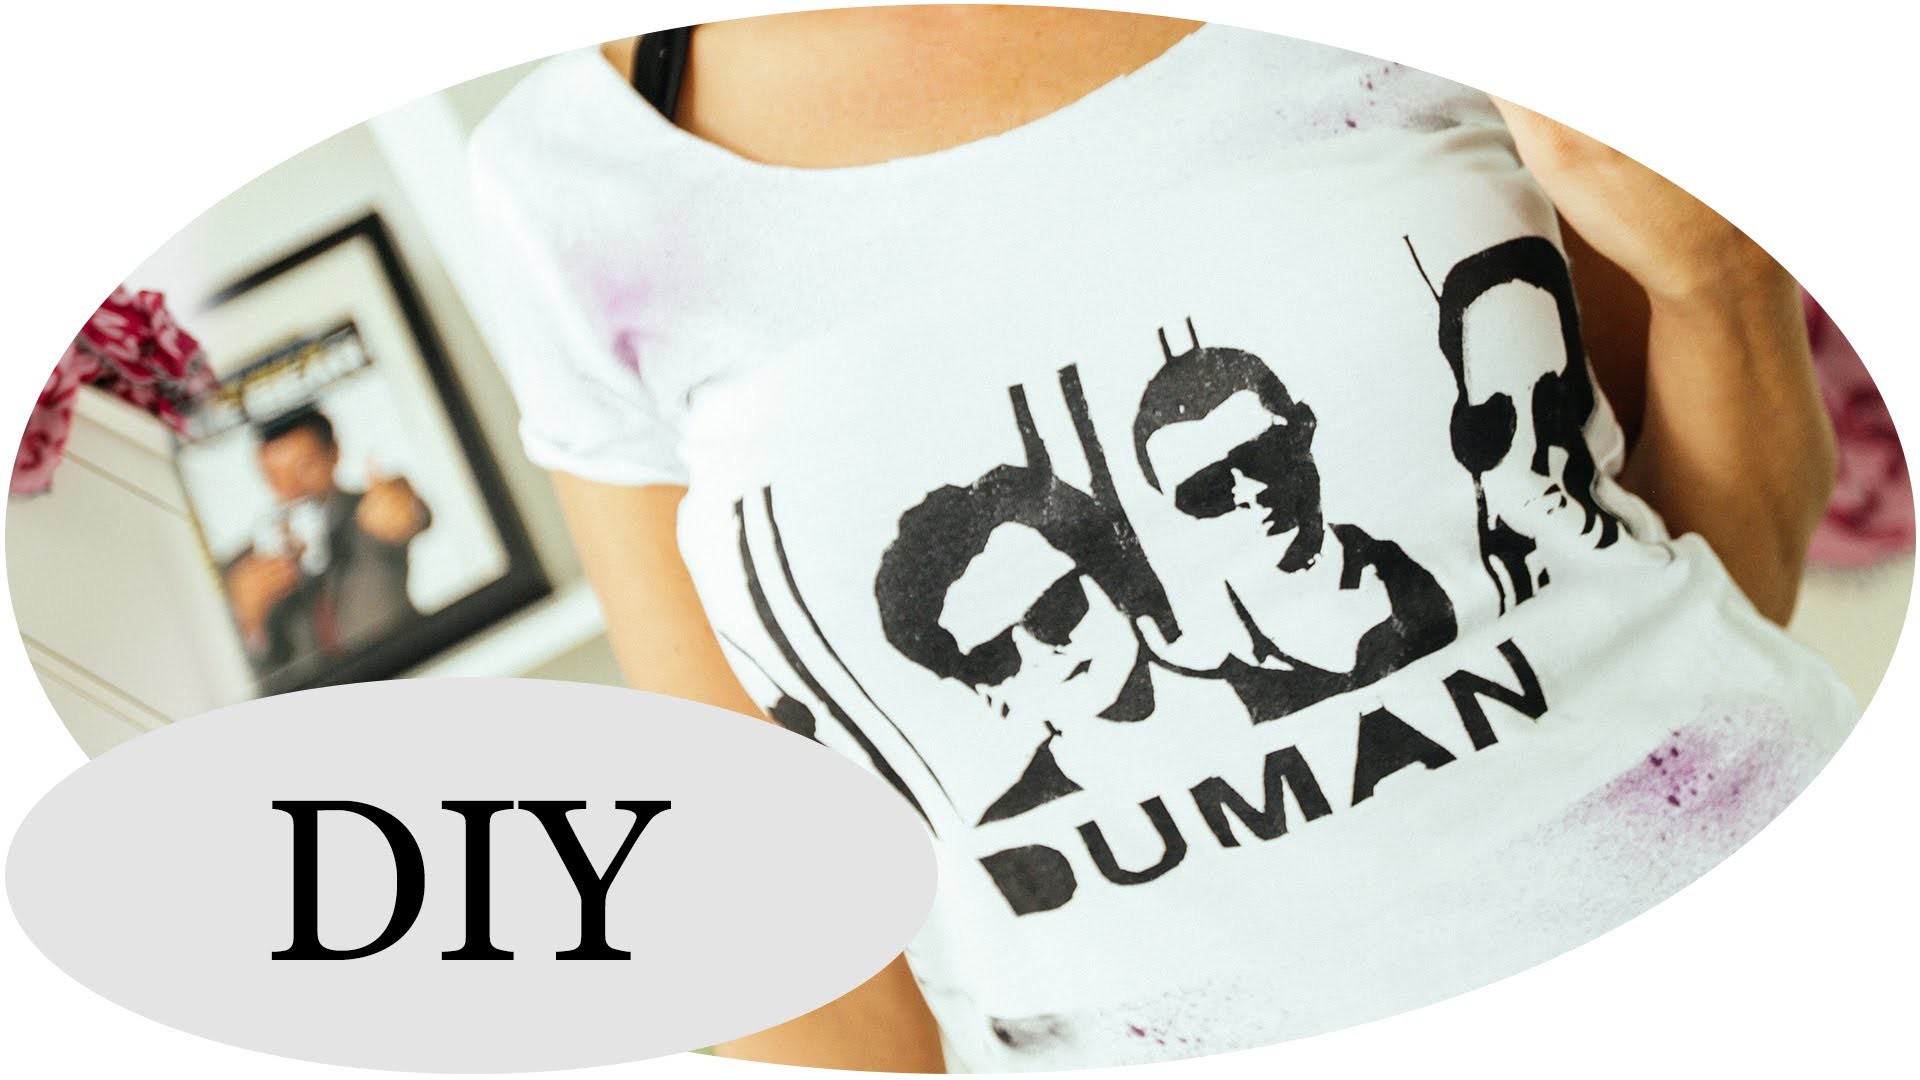 DIY Band Shirts - Mit Aufdruck deiner Lieblingsband!!!